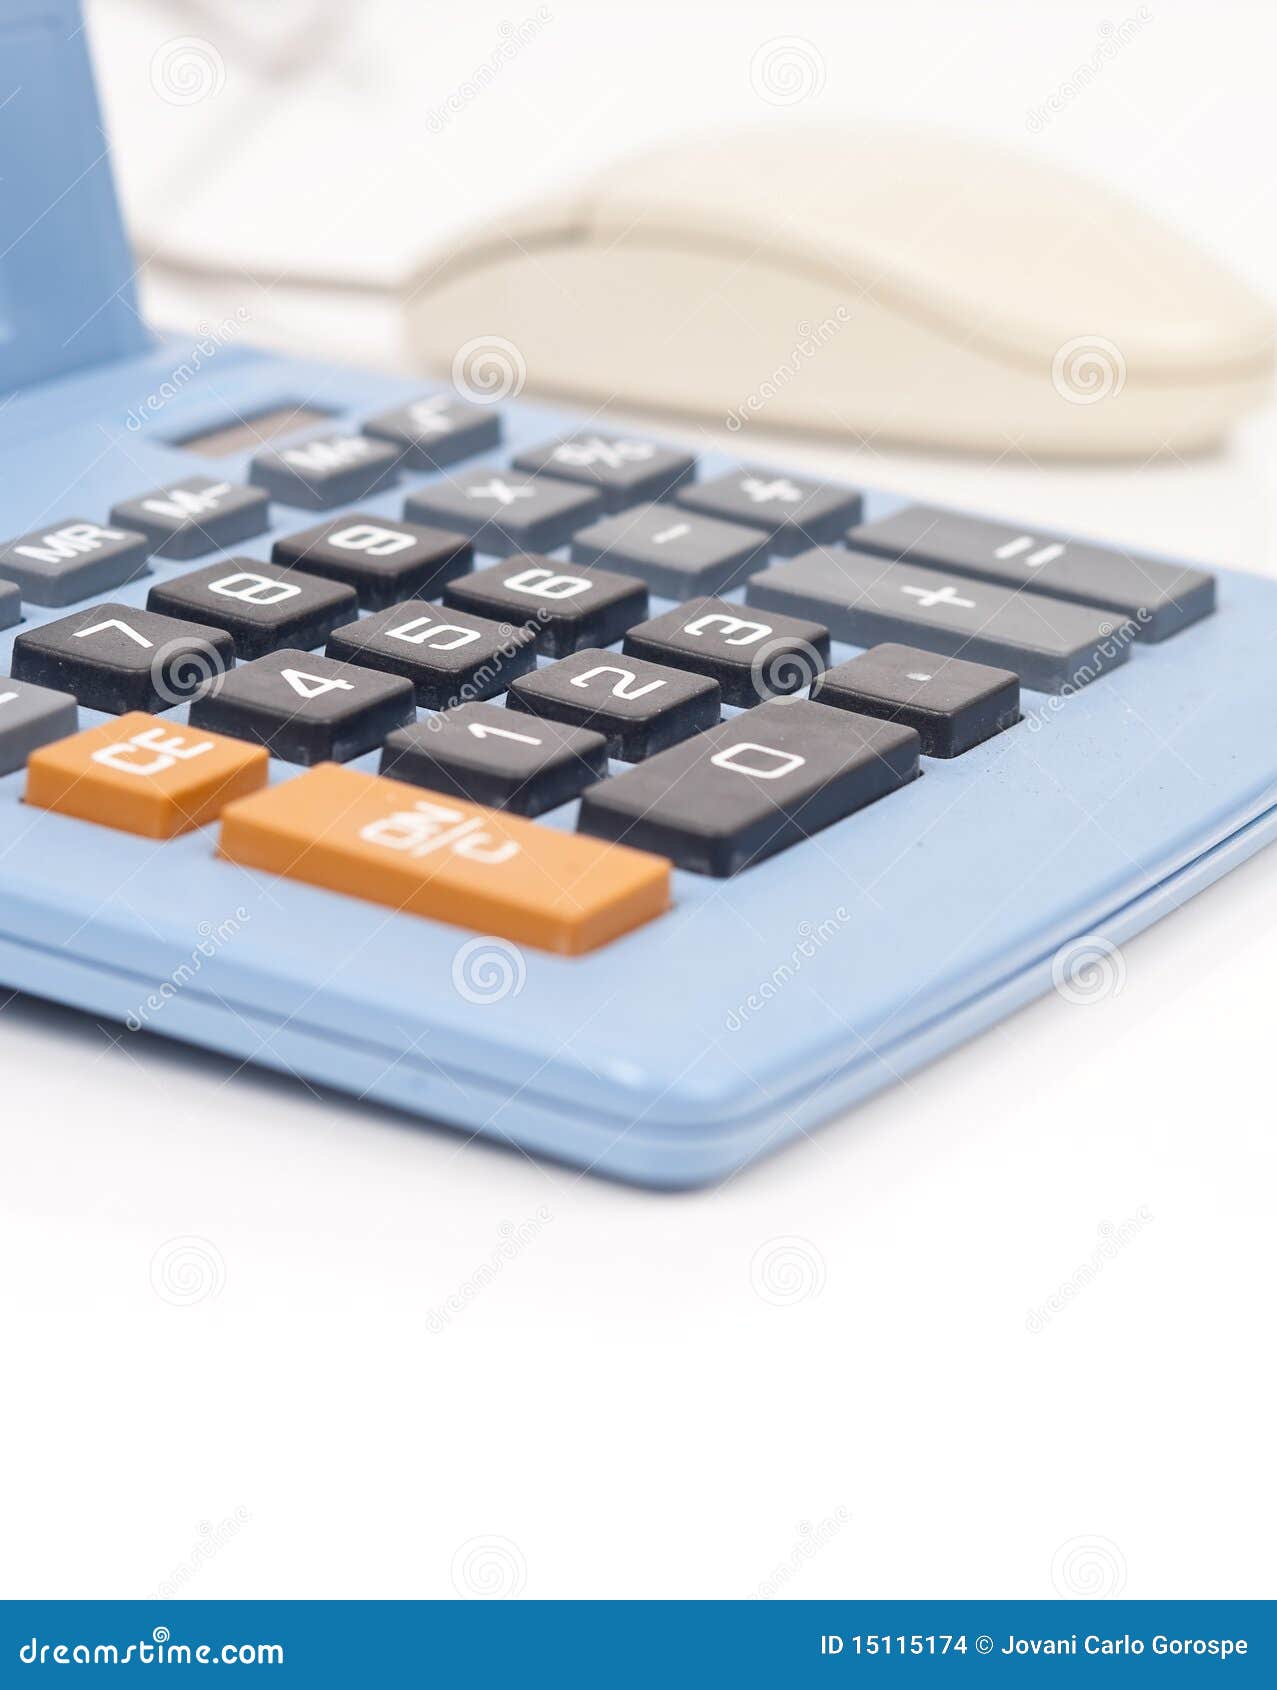 Conceito em linha da operação bancária. Rato do computador ao lado da calculadora para a operação bancária ou finanças em linha